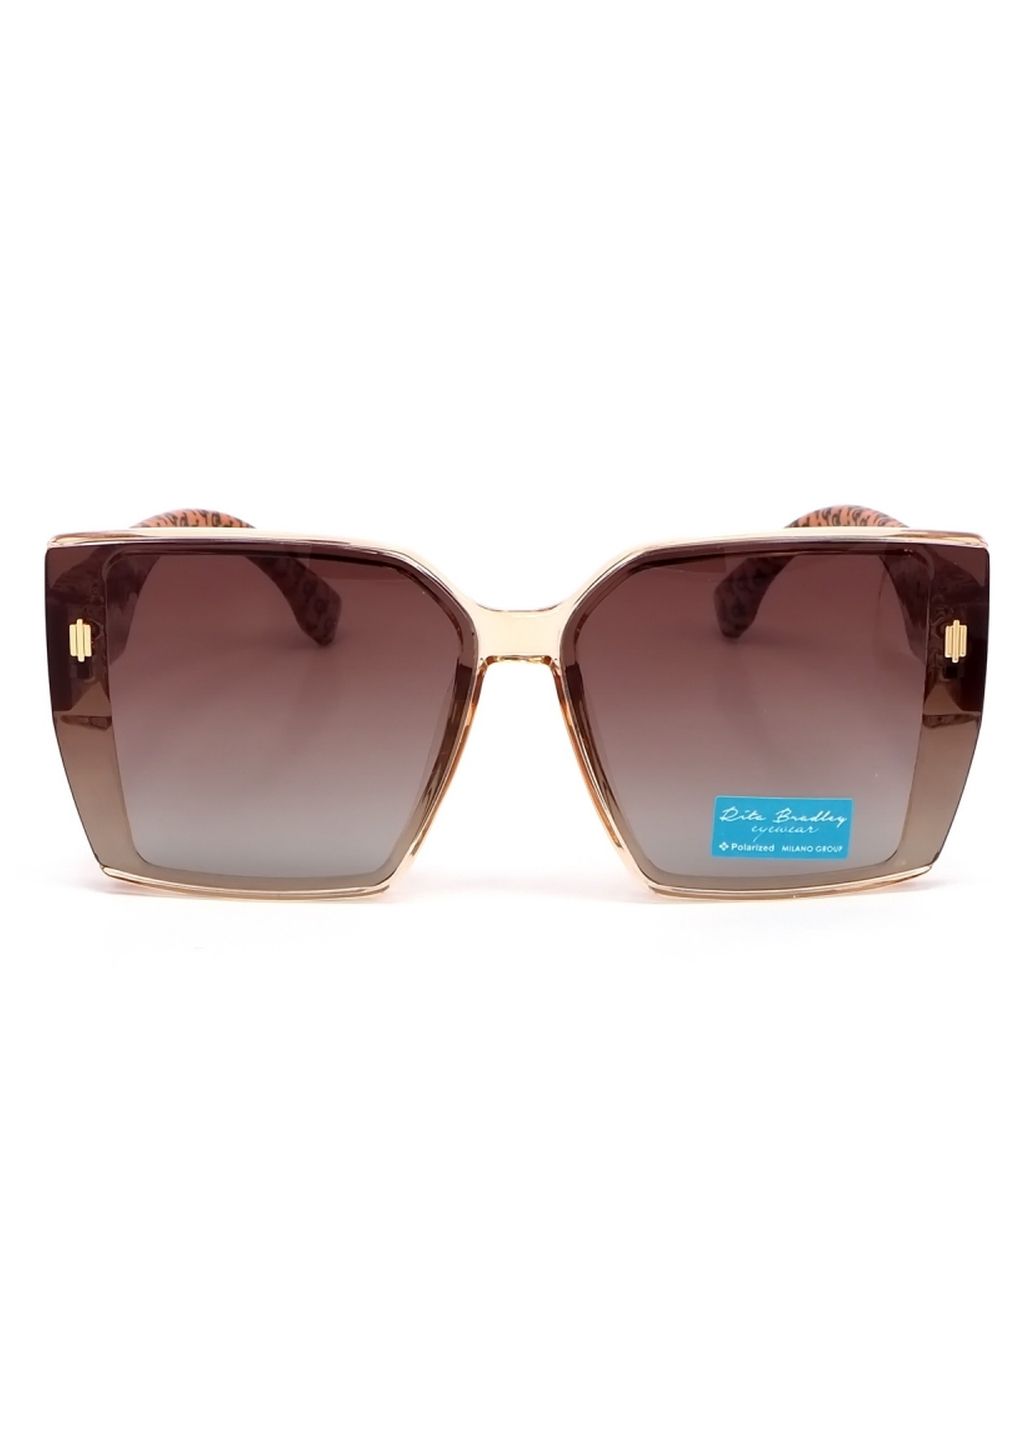 Купить Женские солнцезащитные очки Rita Bradley с поляризацией RB727 112060 в интернет-магазине